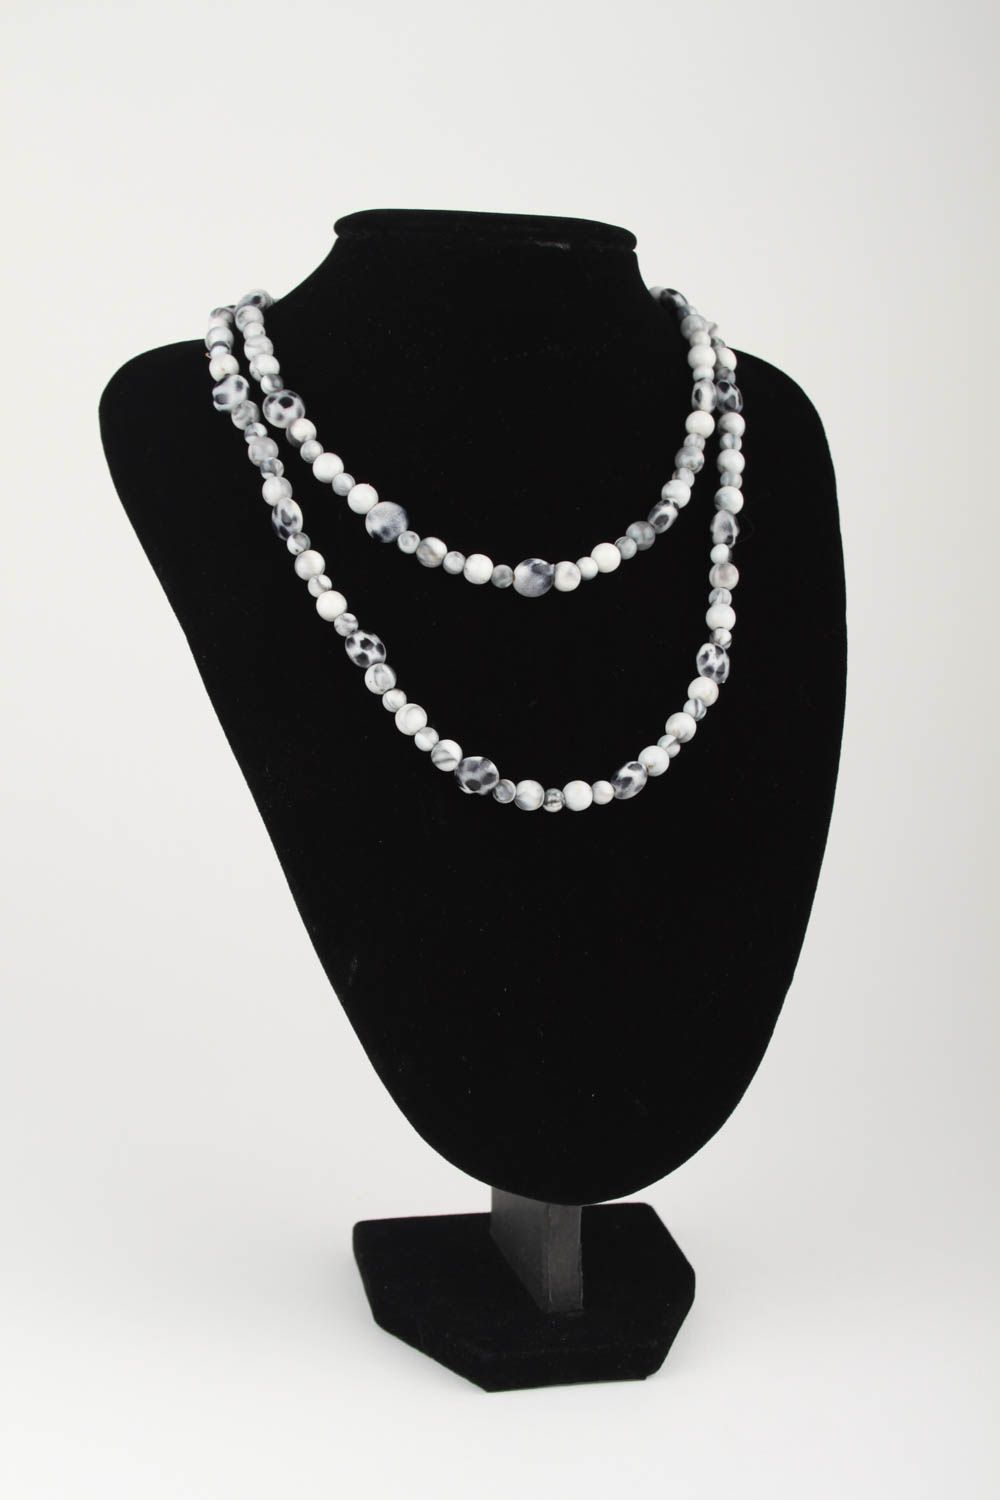 Collier perles fantaisie Bijou fait main gris-blanc 2 rangs Cadeau femme photo 1